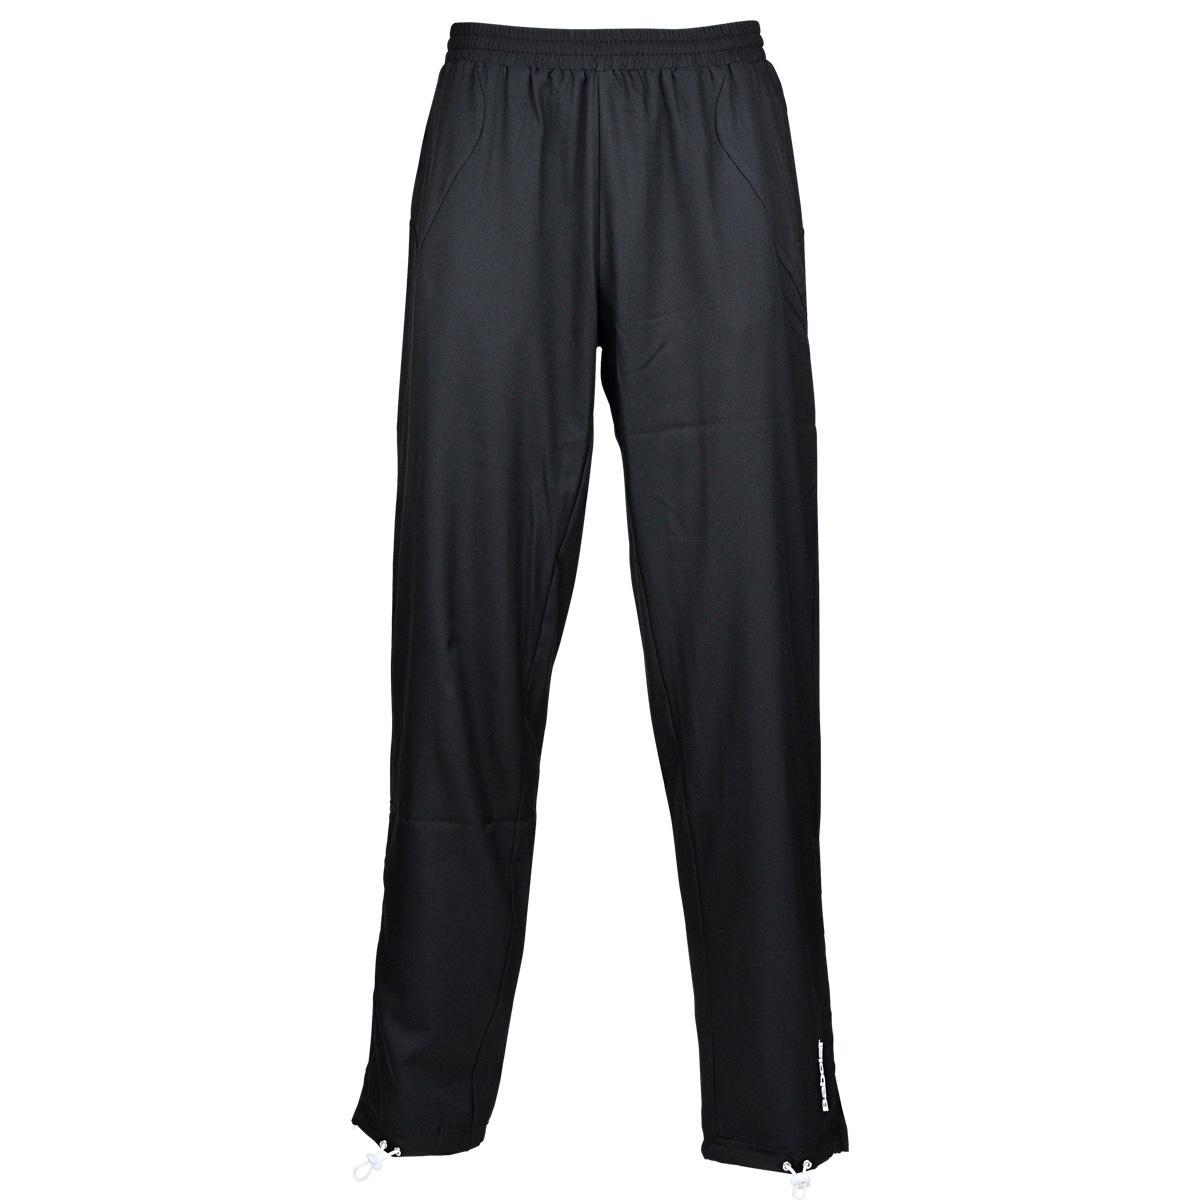 Babolat Mens Match Core Pants - Black - Tennisnuts.com